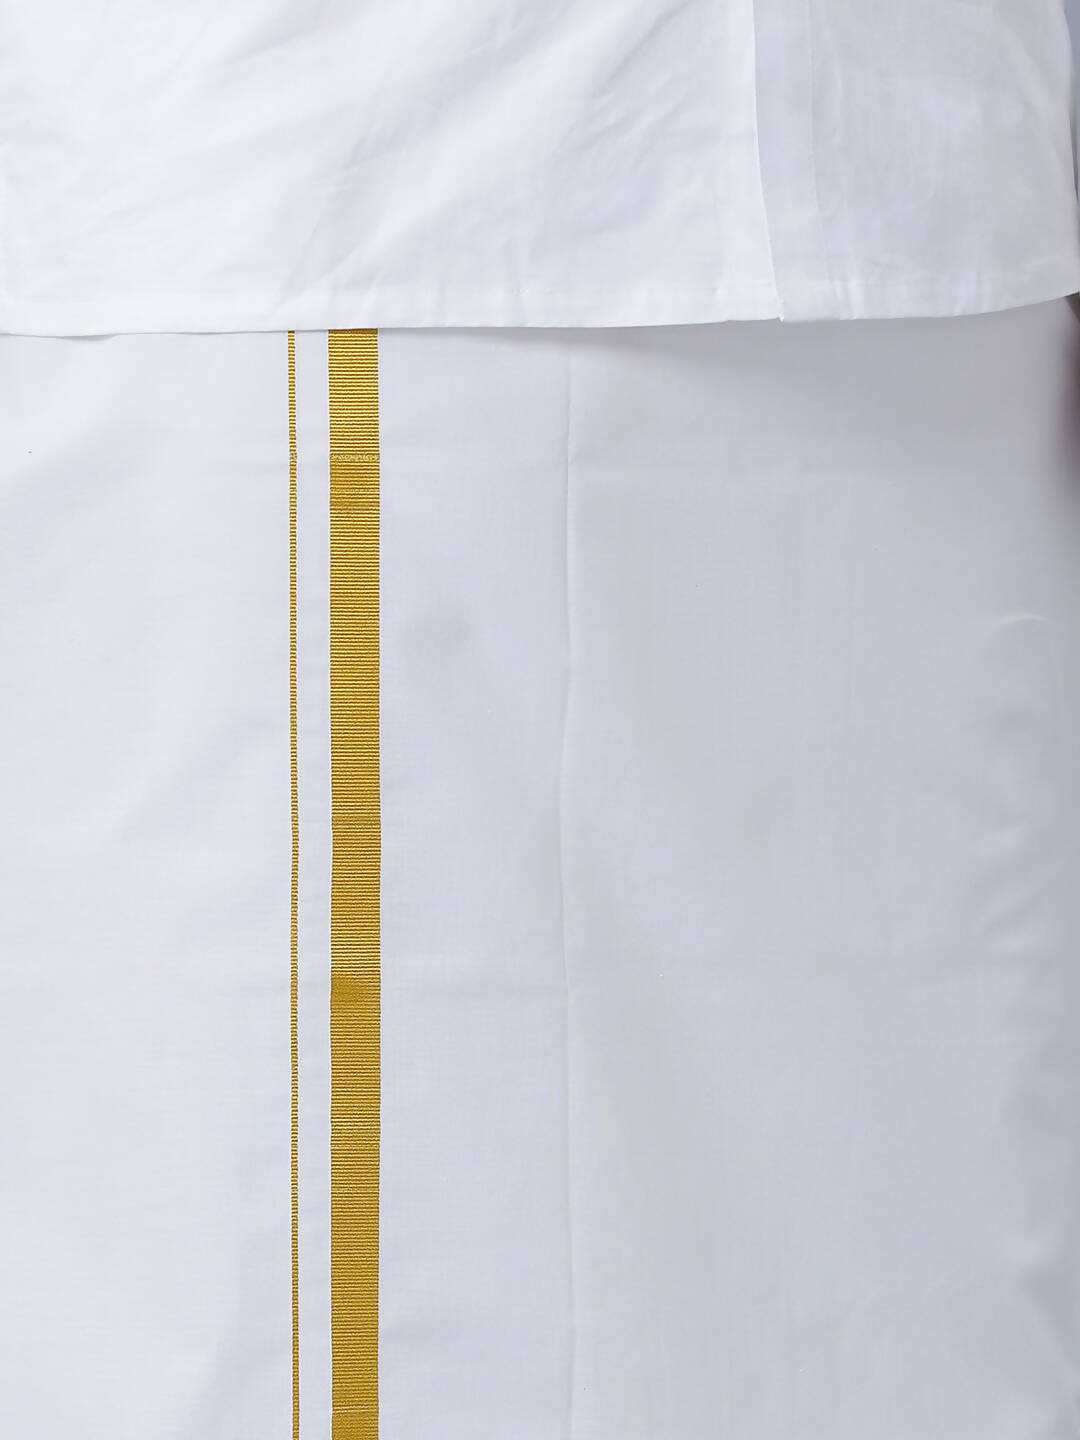 Ramraj Cotton Premium Wedding White Readymade Dhoti, Shirt & Towel Set Dhanvanthri - Distacart